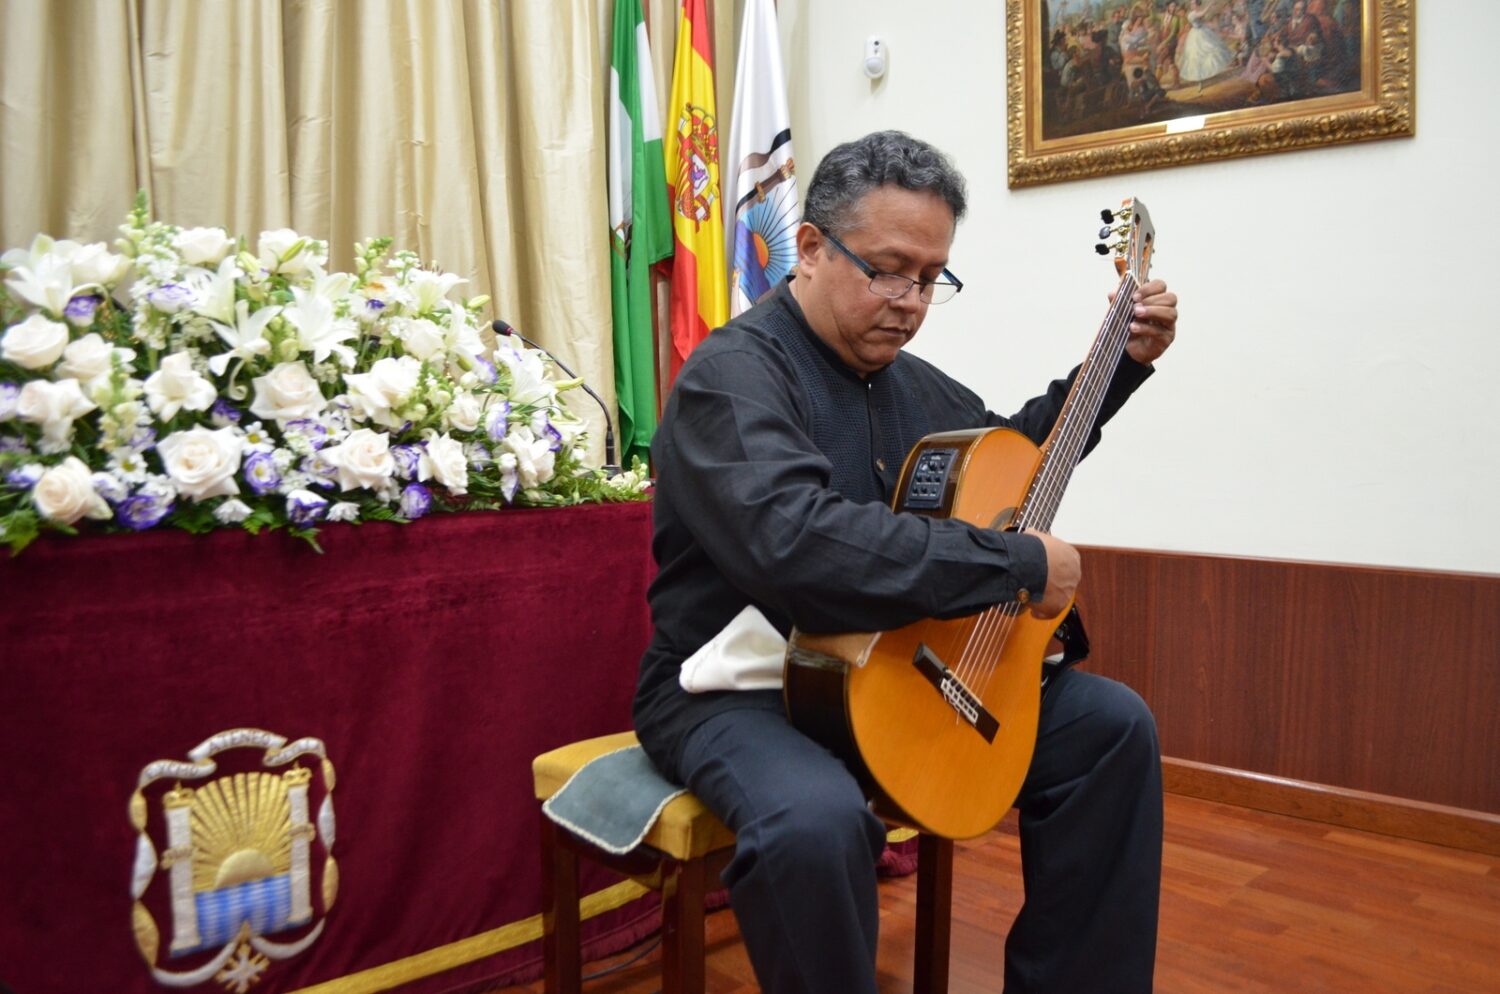 El concierto se celebró en el Salón de Actos de la institución